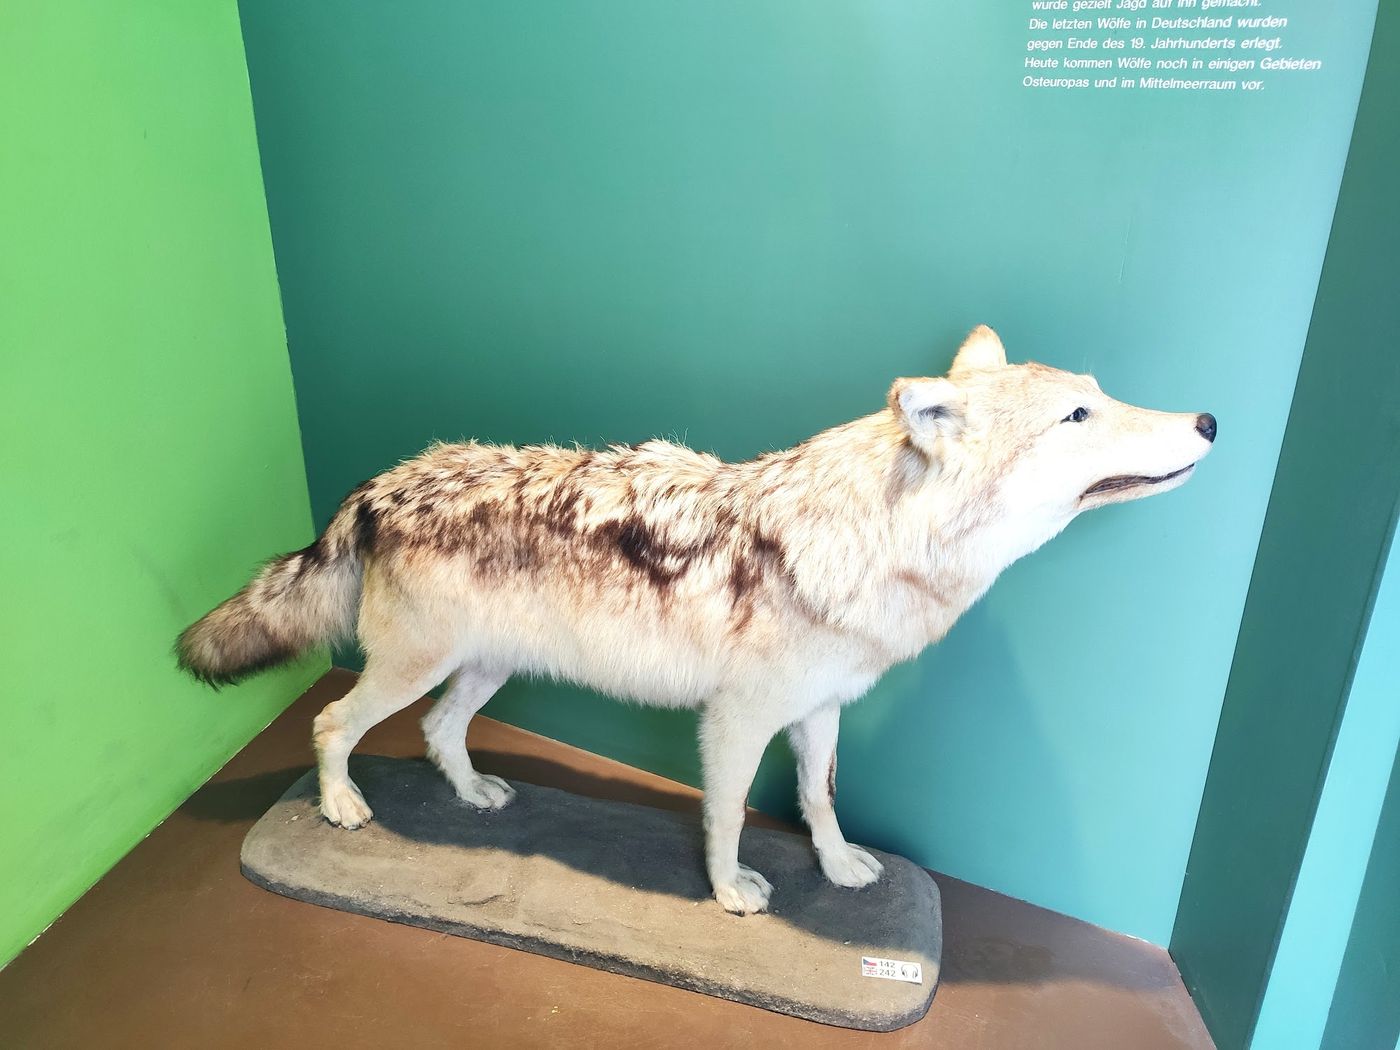 Entdecke die Naturwunder im Naturkundemuseum